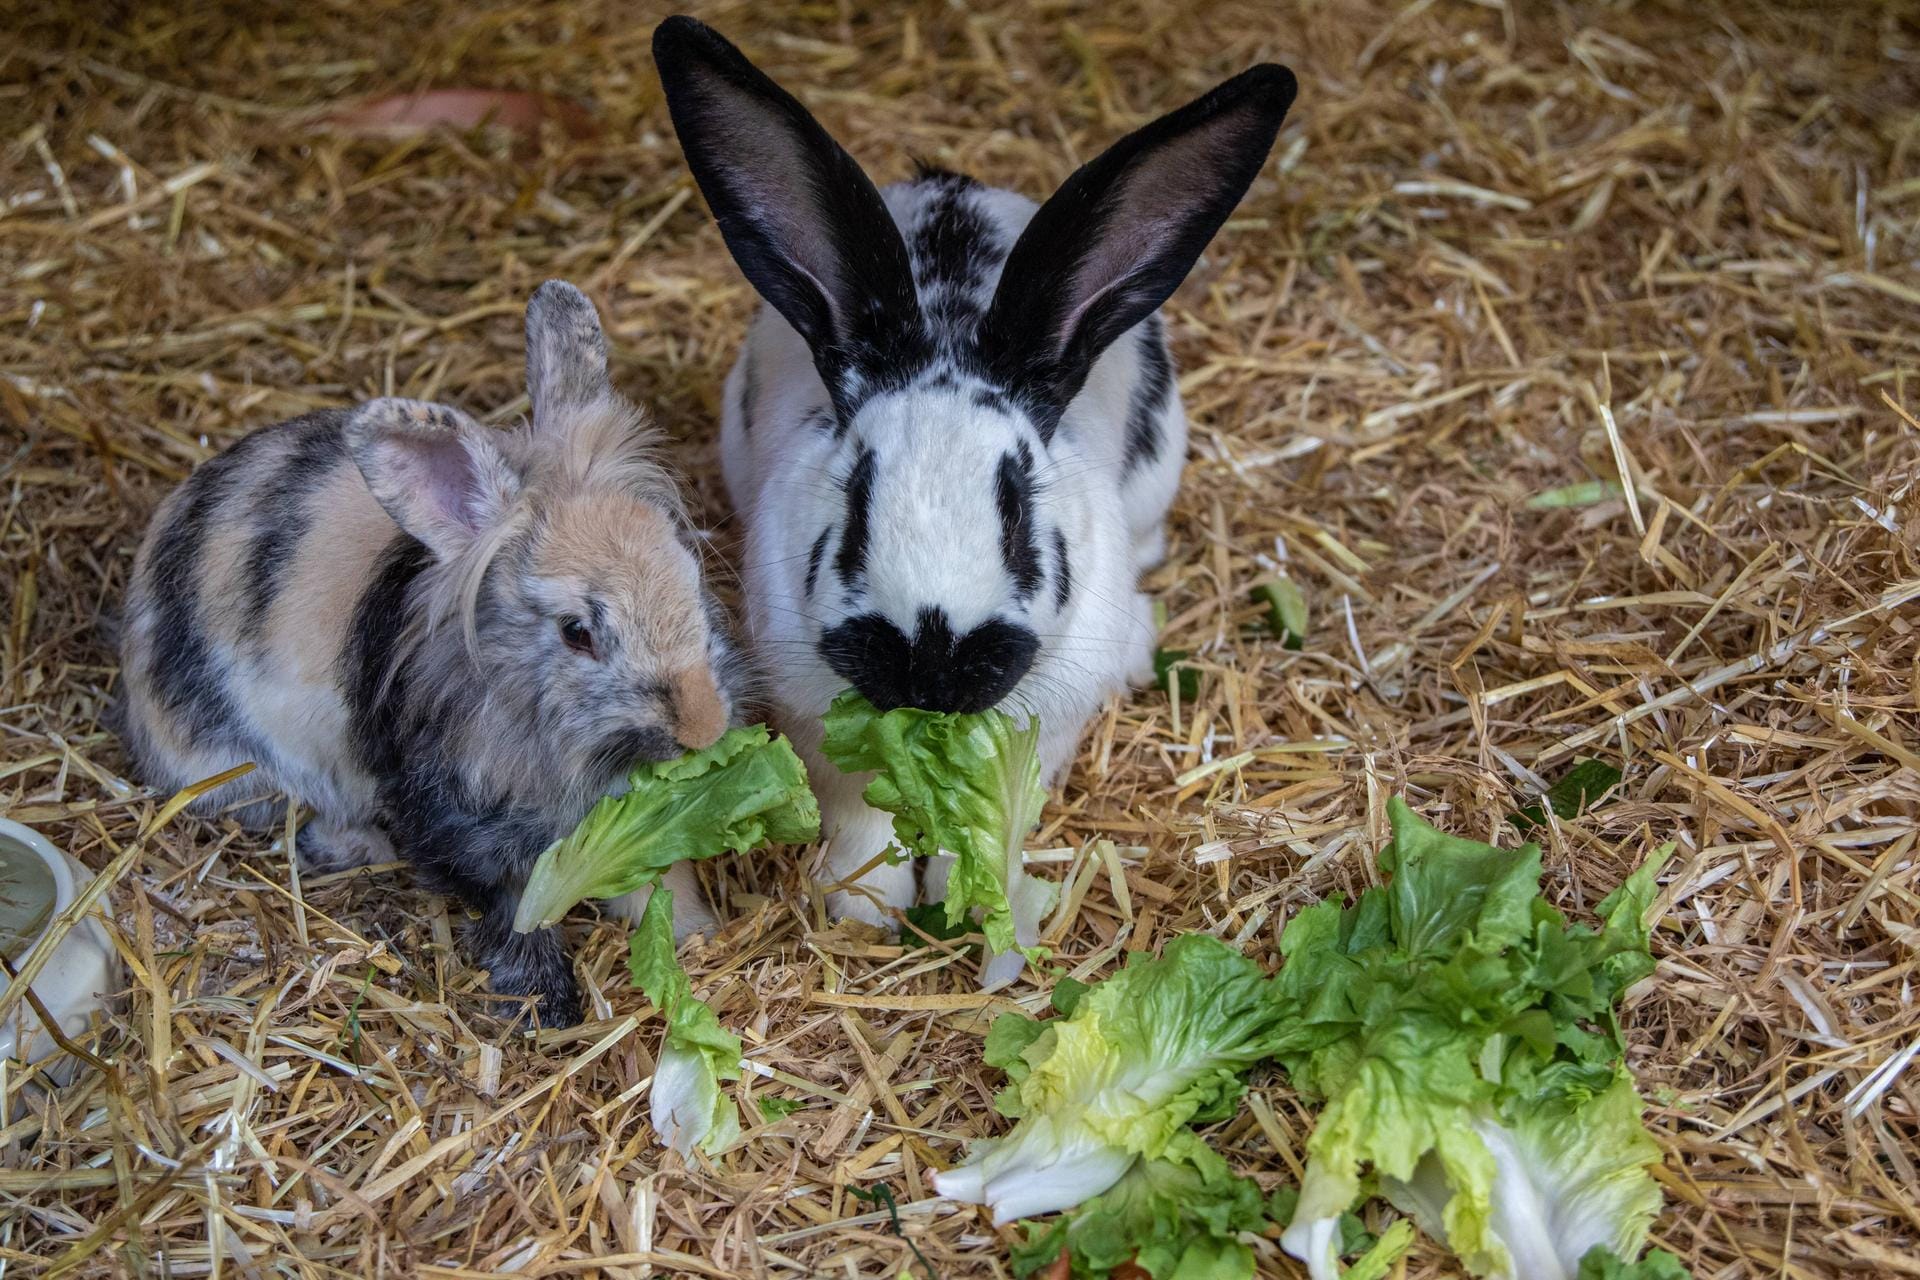 Meerschweinchen und Kaninchen ernähren sich hauptsächlich von Rohfaser (hochwertigem Heu) und frischem Grünfutter. Auch Obstbaumäste und Wasser sollten immer zur Verfügung stehen.